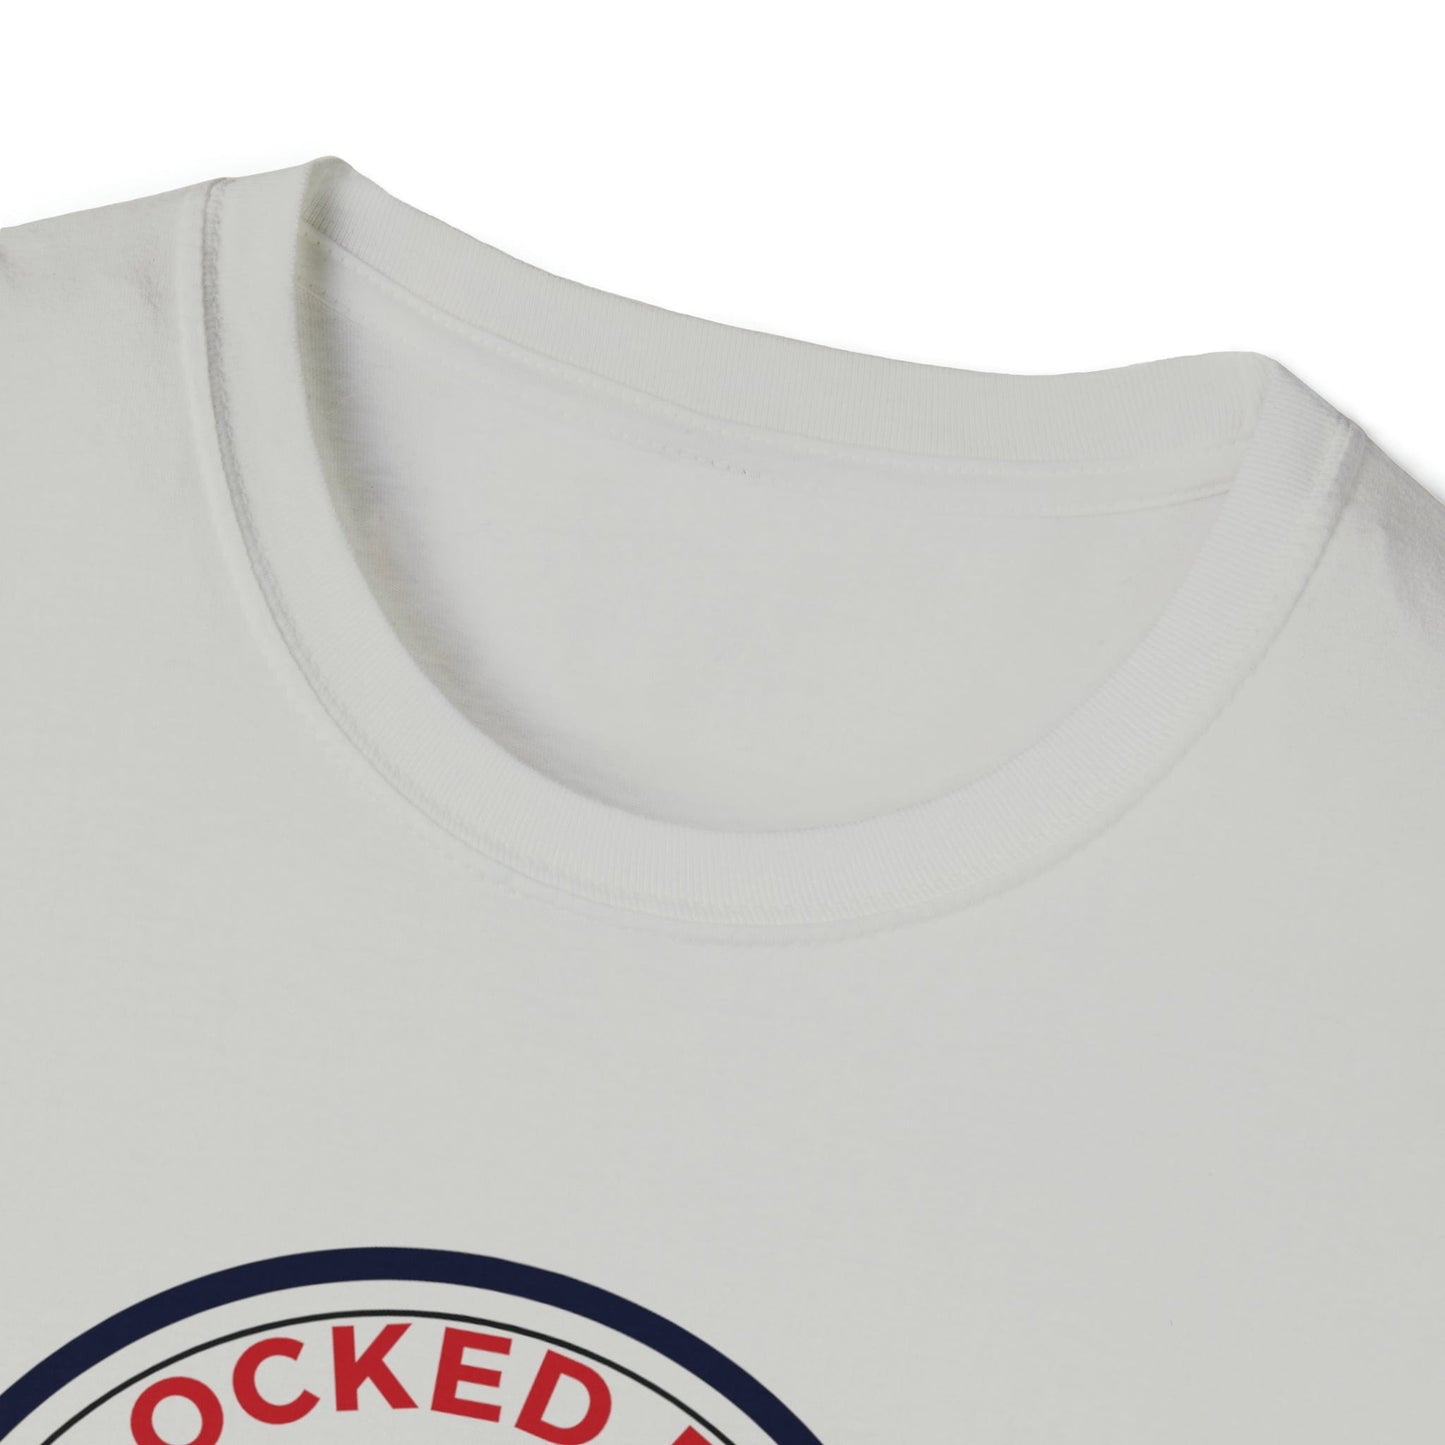 T-Shirt LockedBoy Sports Club - Chastity Tshirt LEATHERDADDY BATOR